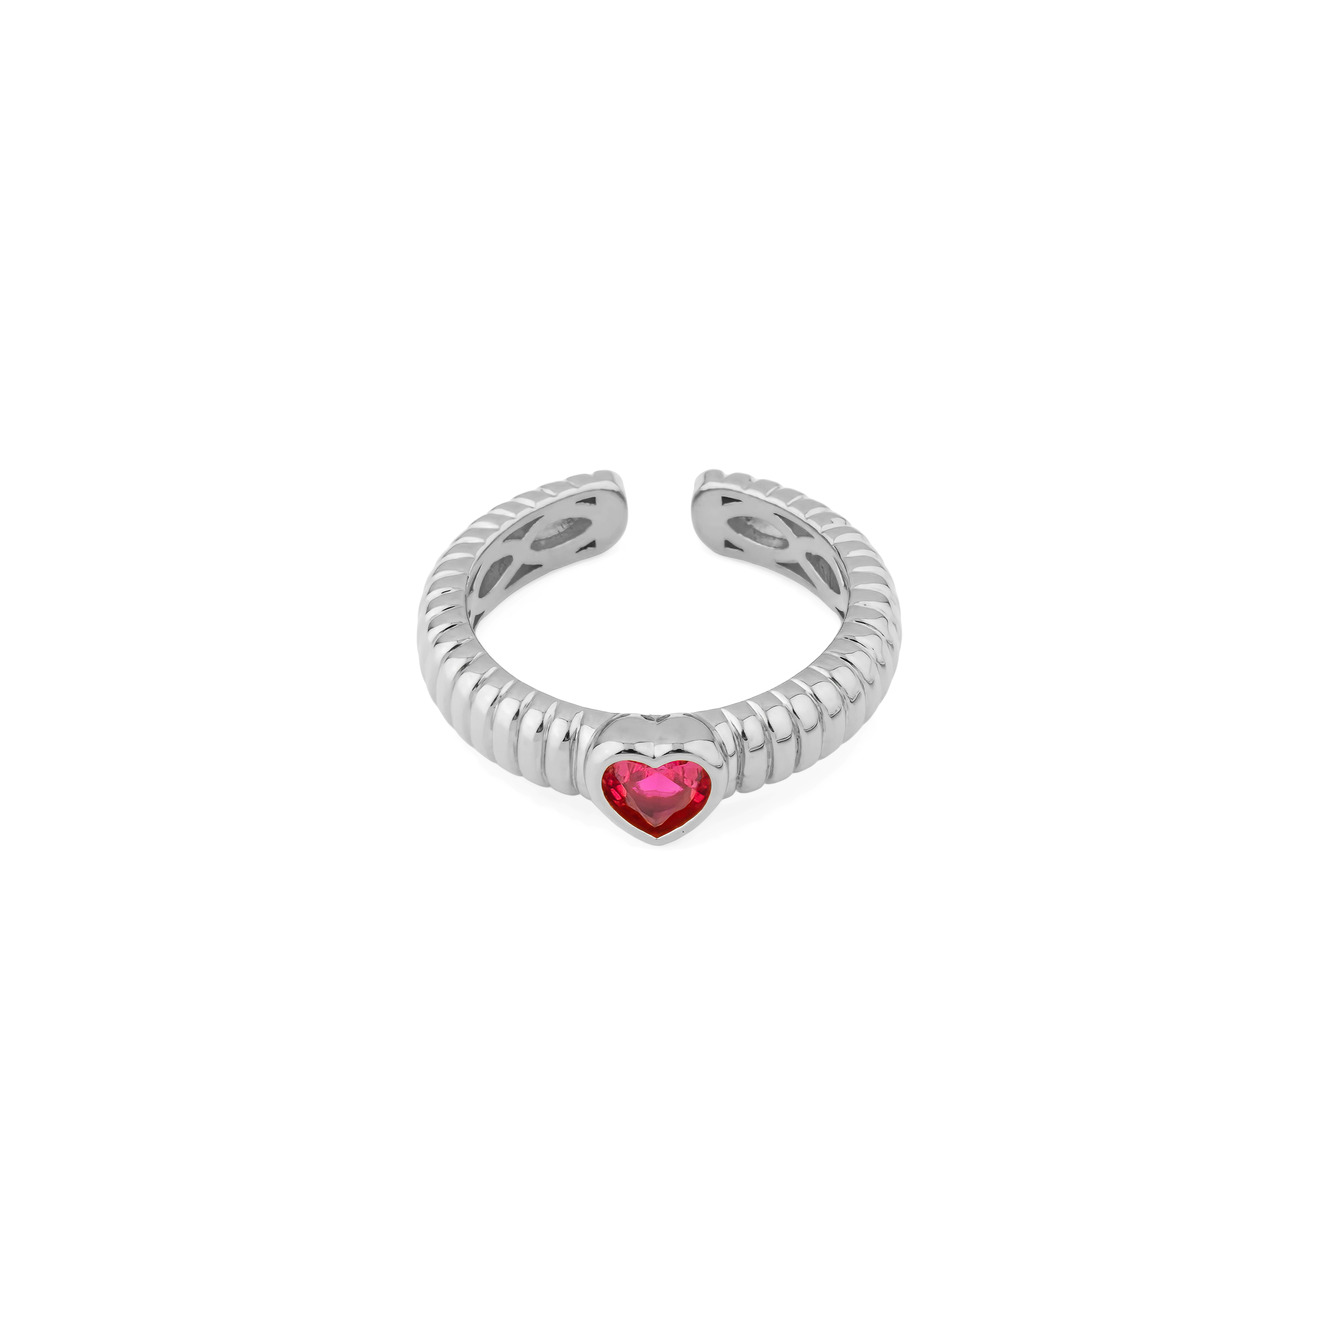 Herald Percy Серебристое фигурное кольцо с красным сердцем herald percy двойное серебристое колье с кулоном сердцем на цепочке змейке